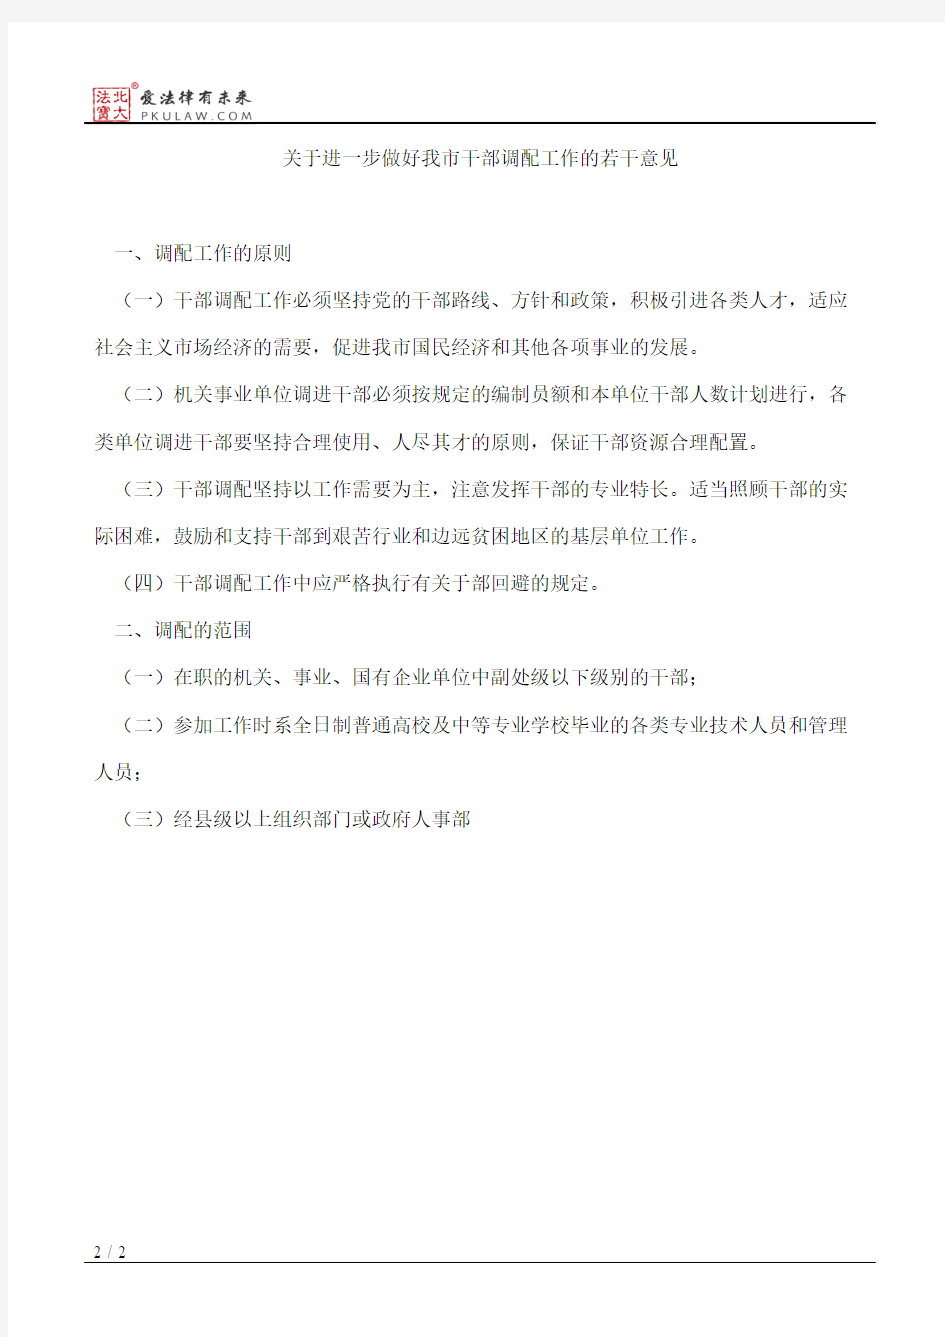 广州市人事局印发《关于进一步做好我市干部调配工作的若干意见》的通知